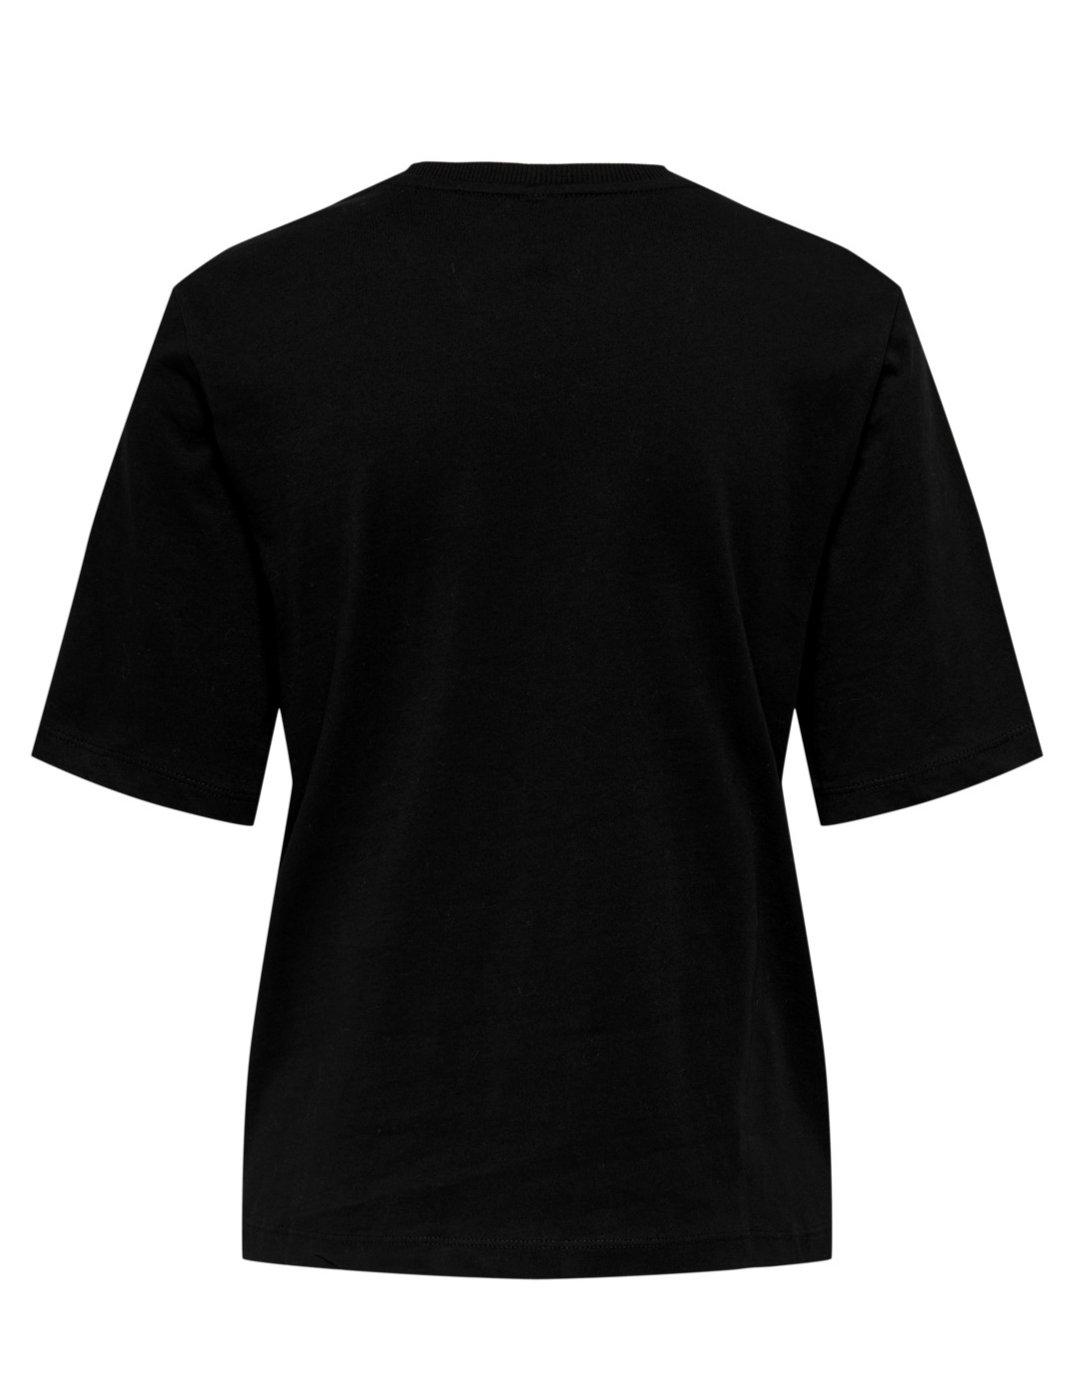 Camiseta Only Mano negra manga corta de mujer